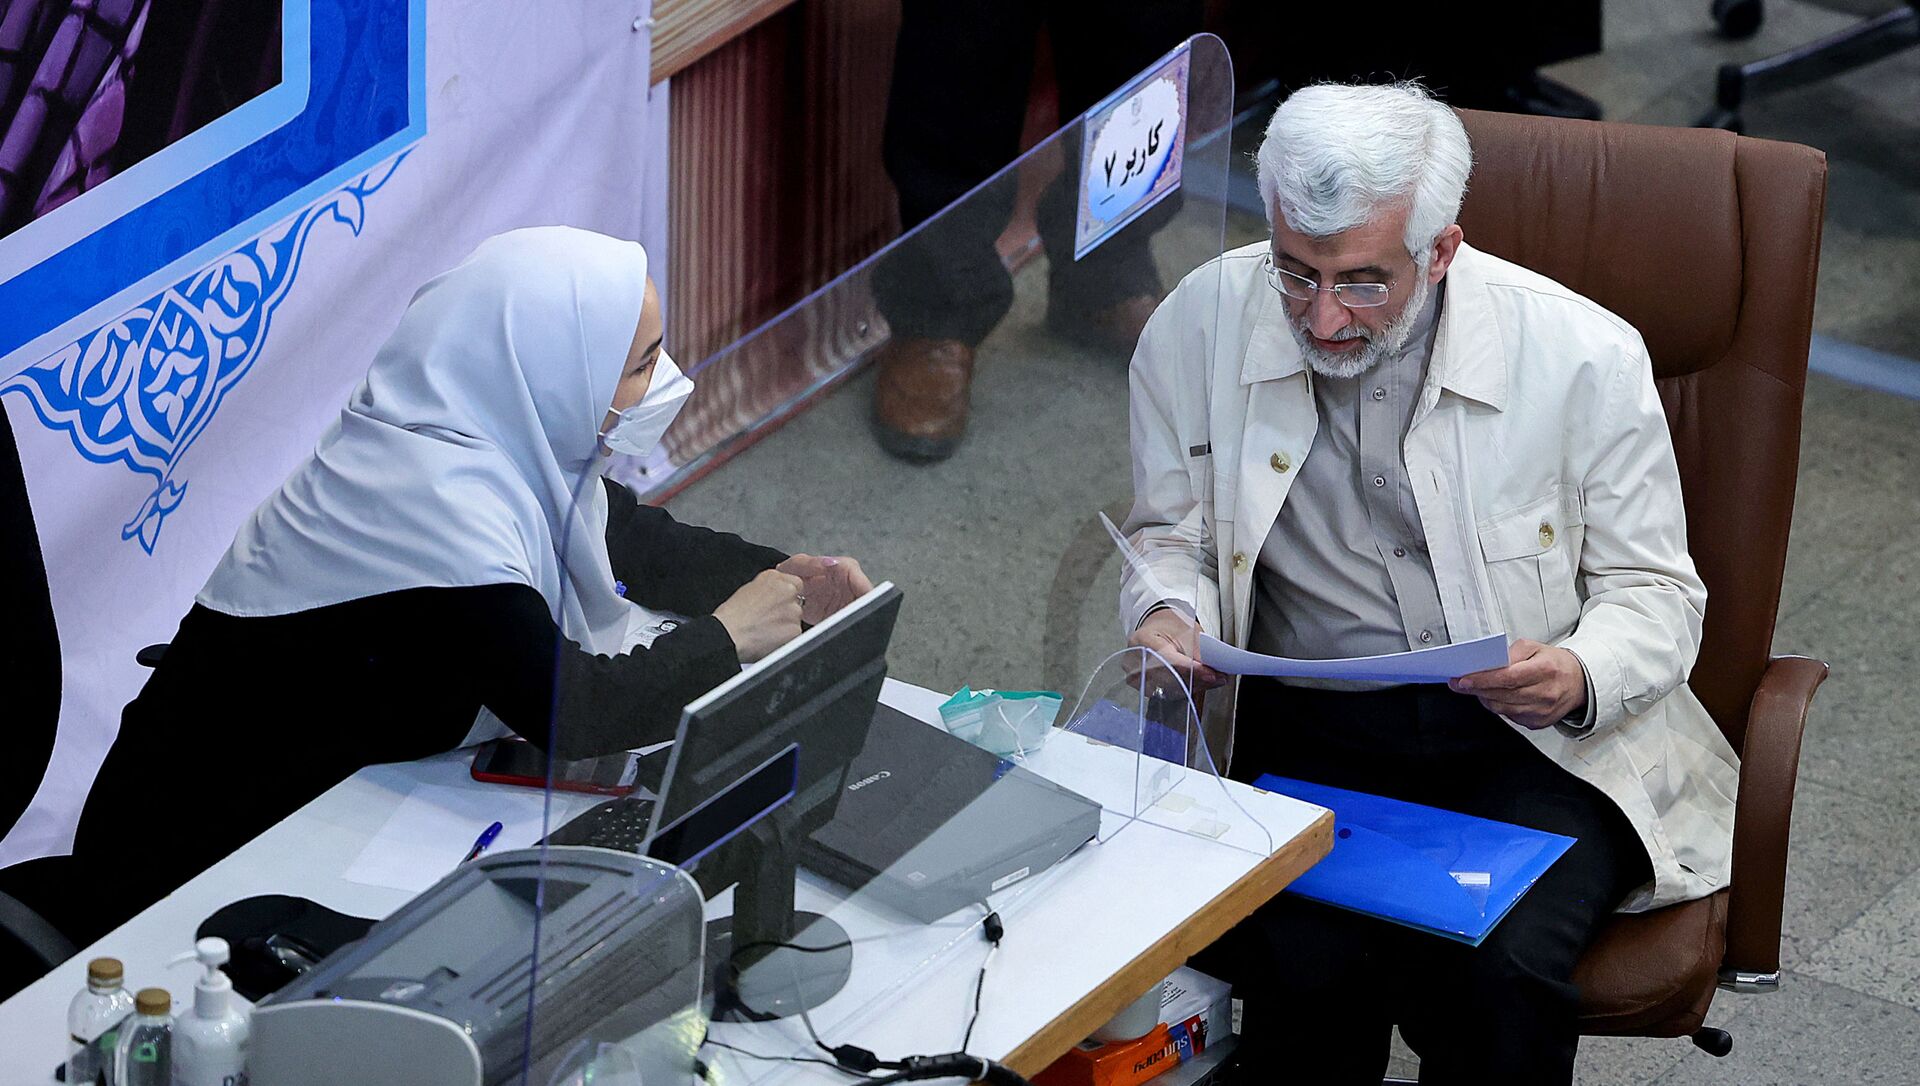 Бывший кандидат в президенты Саид Джалили регистрирует свою кандидатуру на июньских президентских выборах в столице Тегеране, 15 мая 2021 года - Sputnik Азербайджан, 1920, 26.05.2021